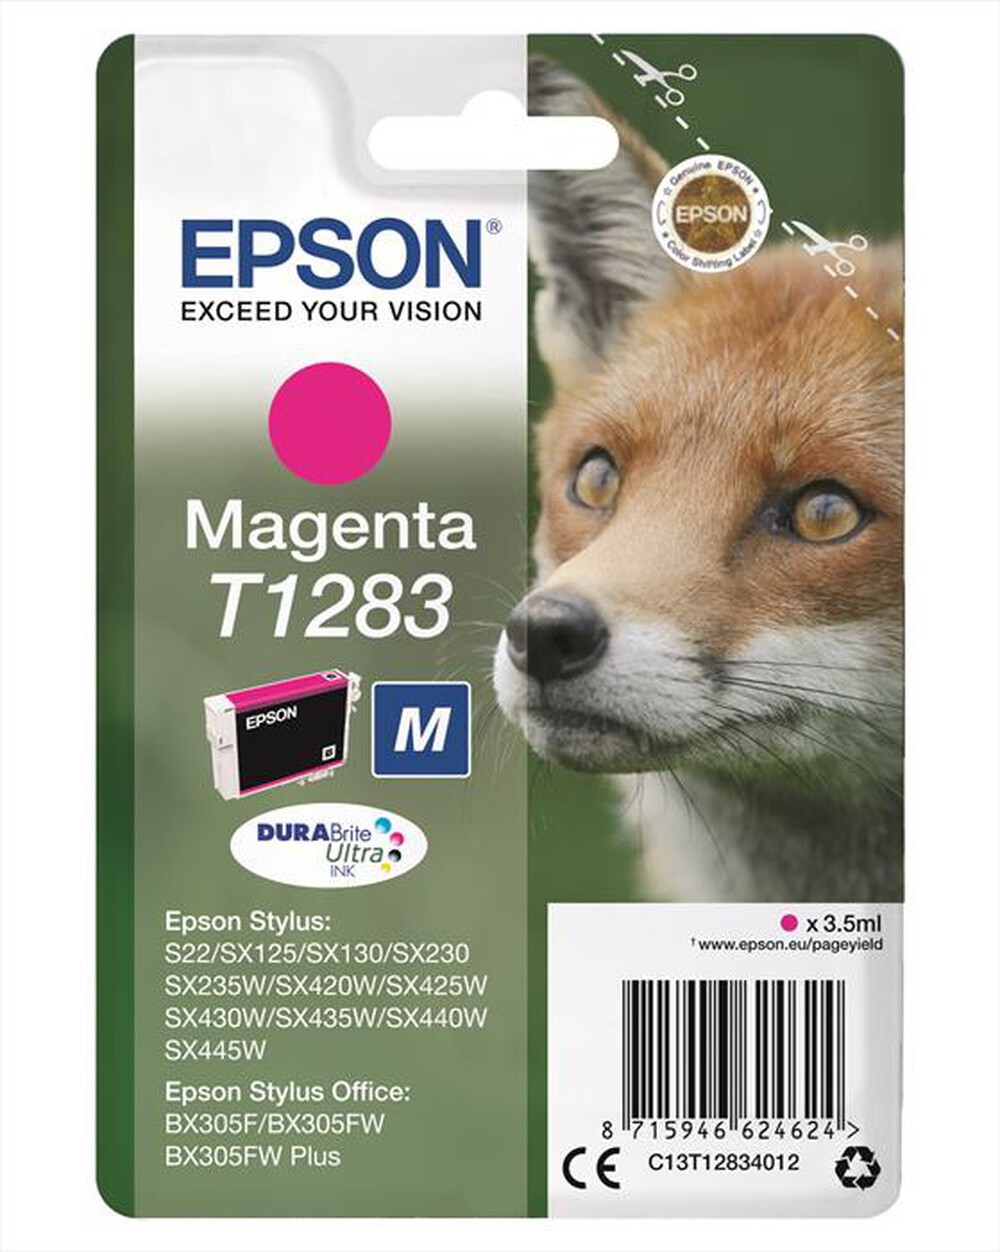 "EPSON - C13T12834022 - Magenta"